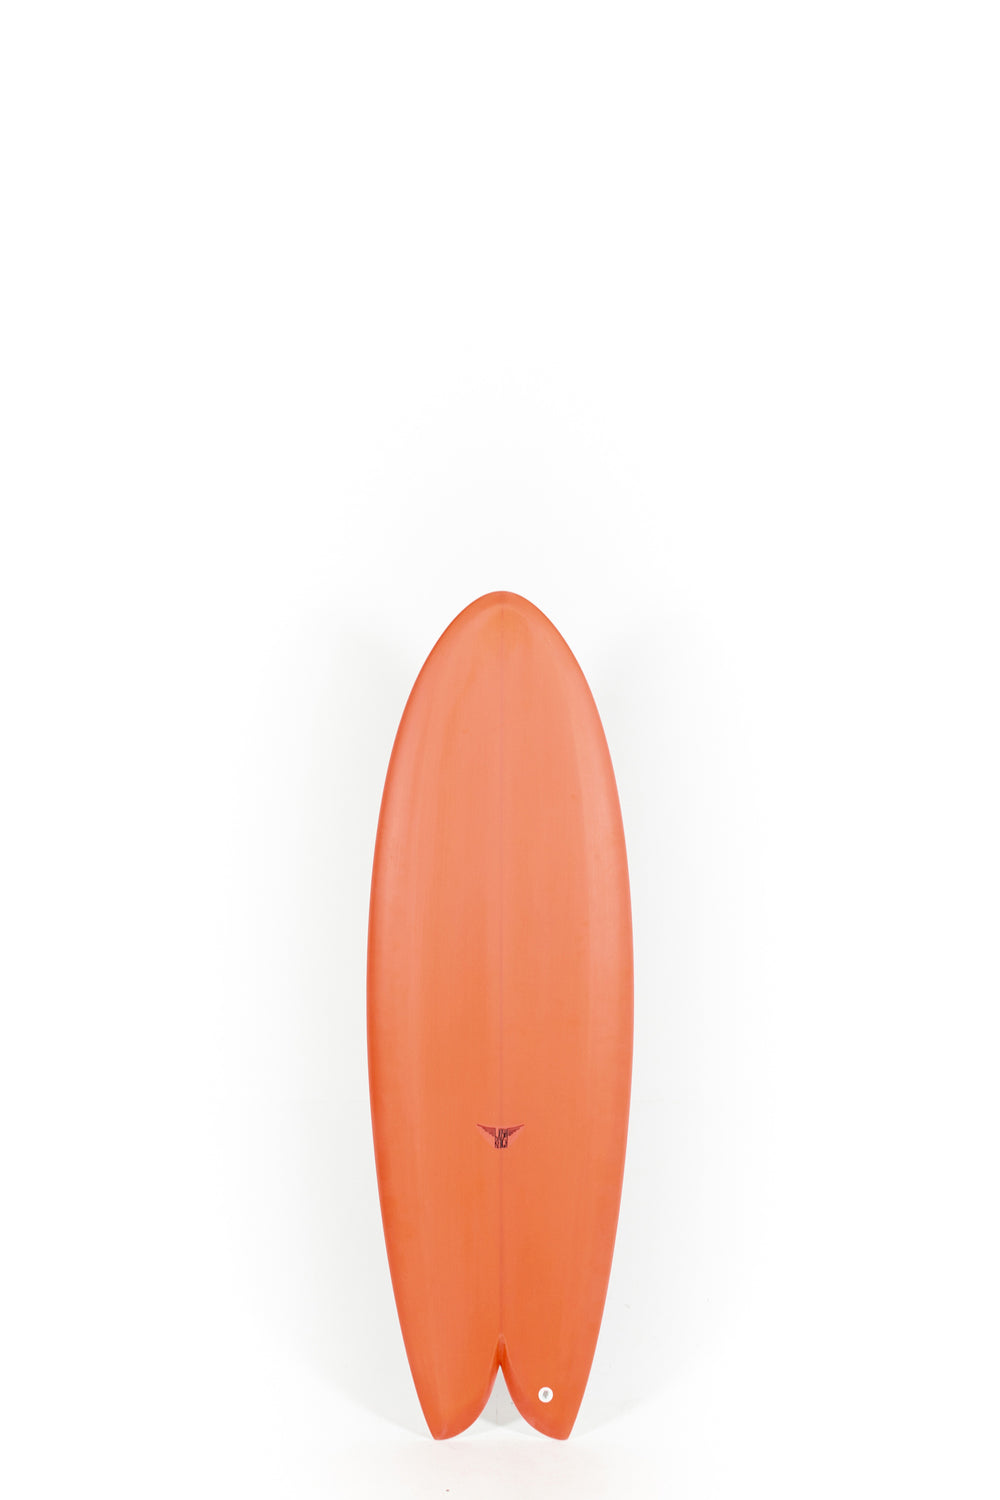 Pukas Surf Shop_Joshua Keogh Surfboard - MONAD by Joshua Keogh - 5'4